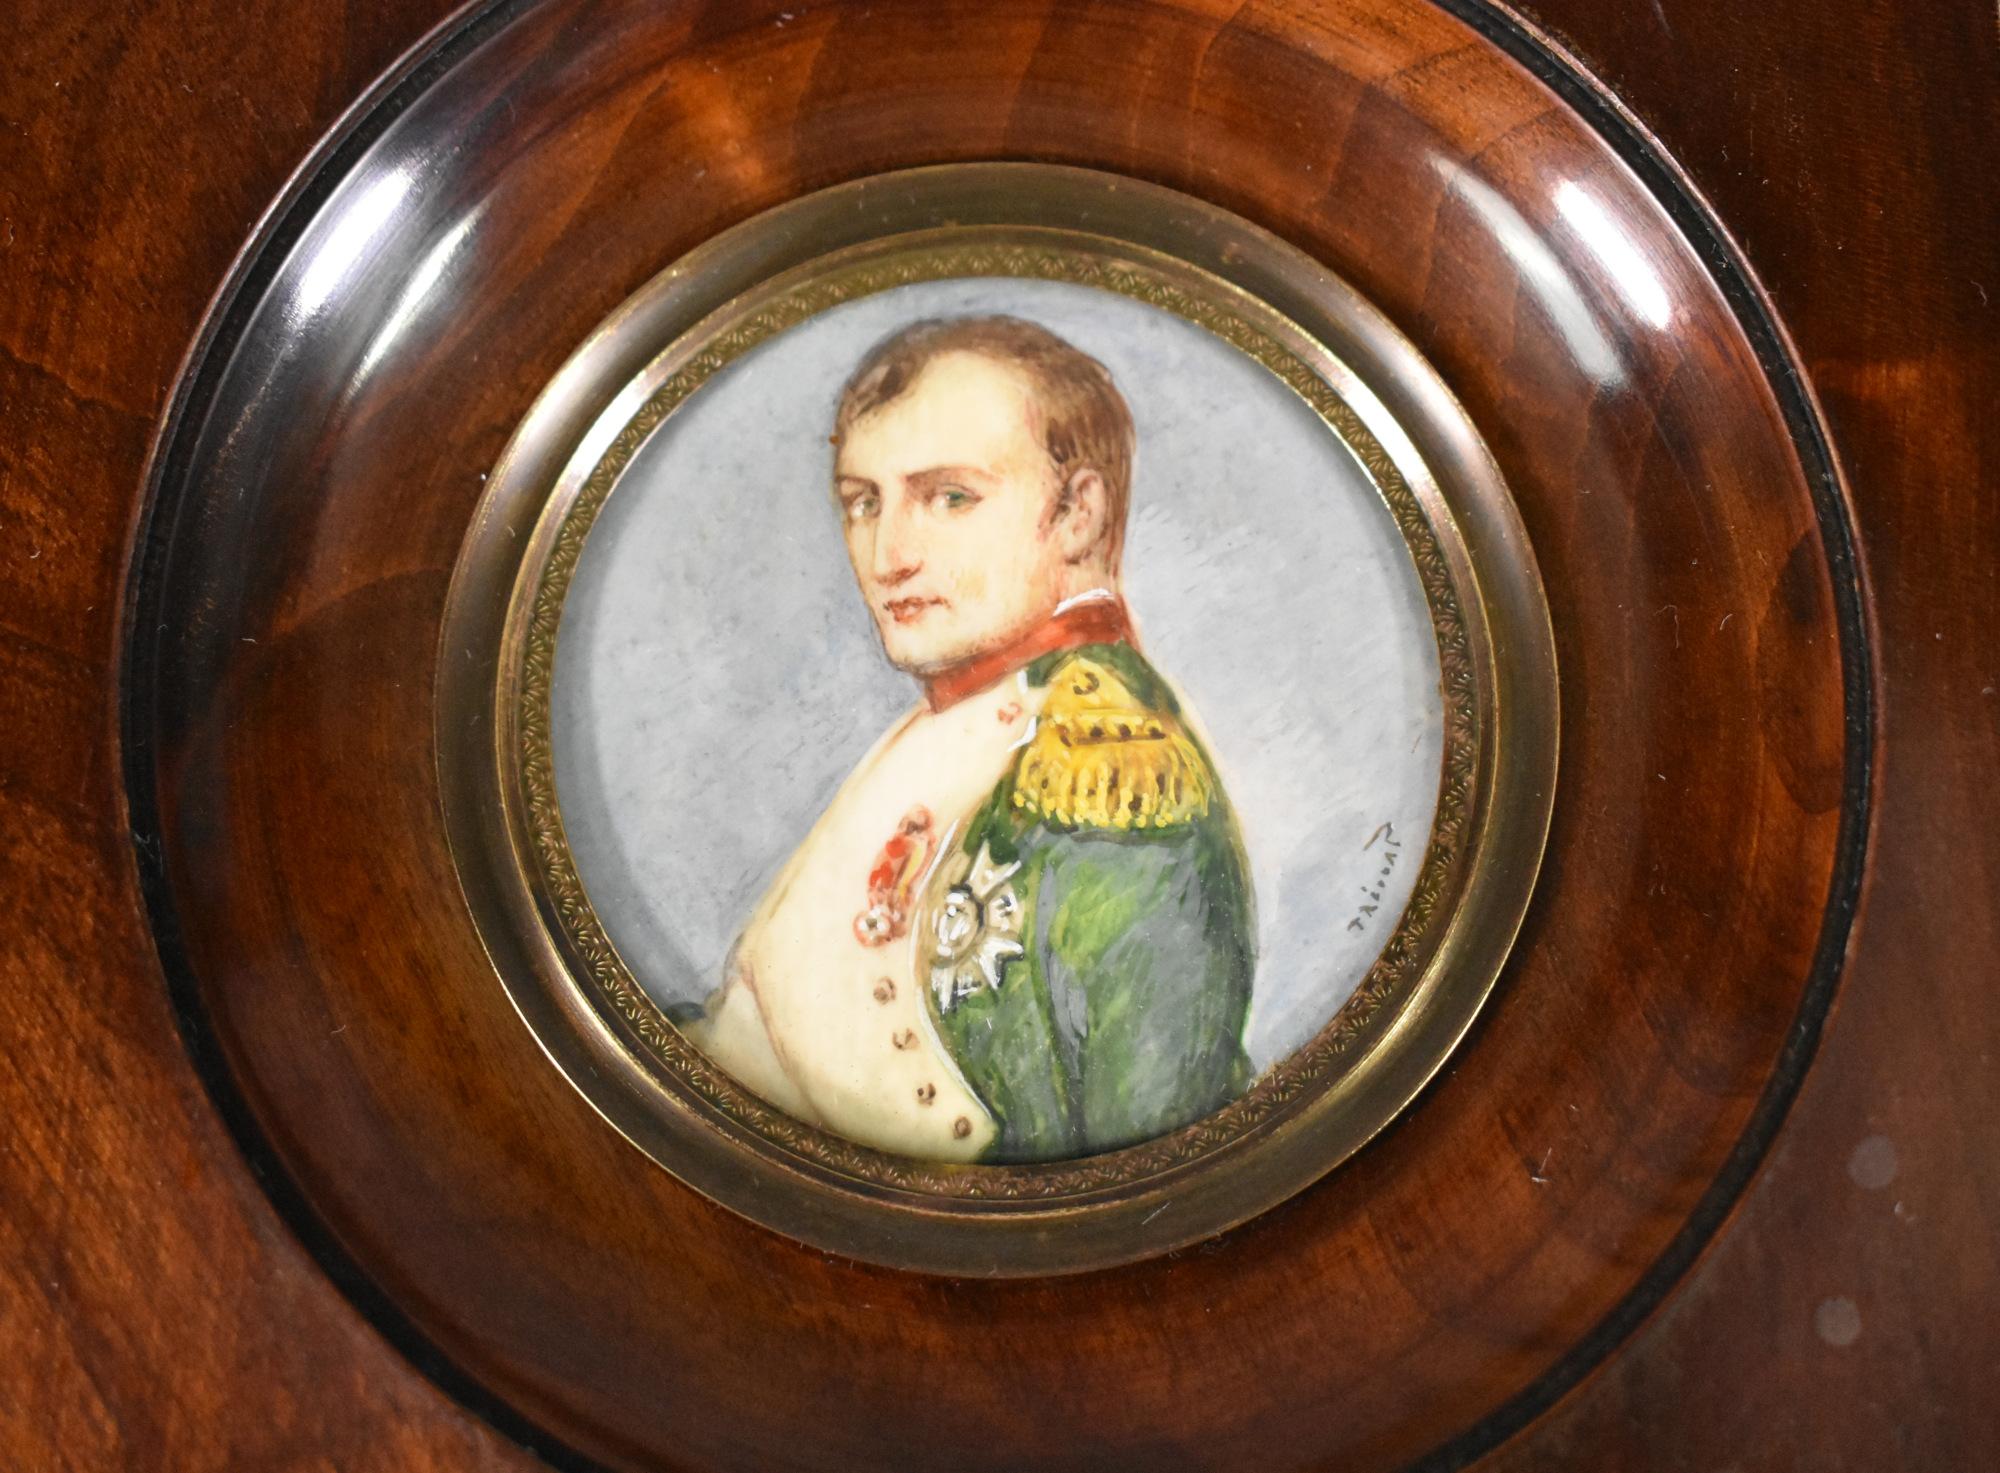 Portrait miniature de Napoléon signé par Prévost, datant du dix-neuvième siècle. 

Le cadre, en acajou massif, est bombé et hautement poli.

Le verre transparent convexe est maintenu par une lunette en laiton. 

La signature Prévost figure en